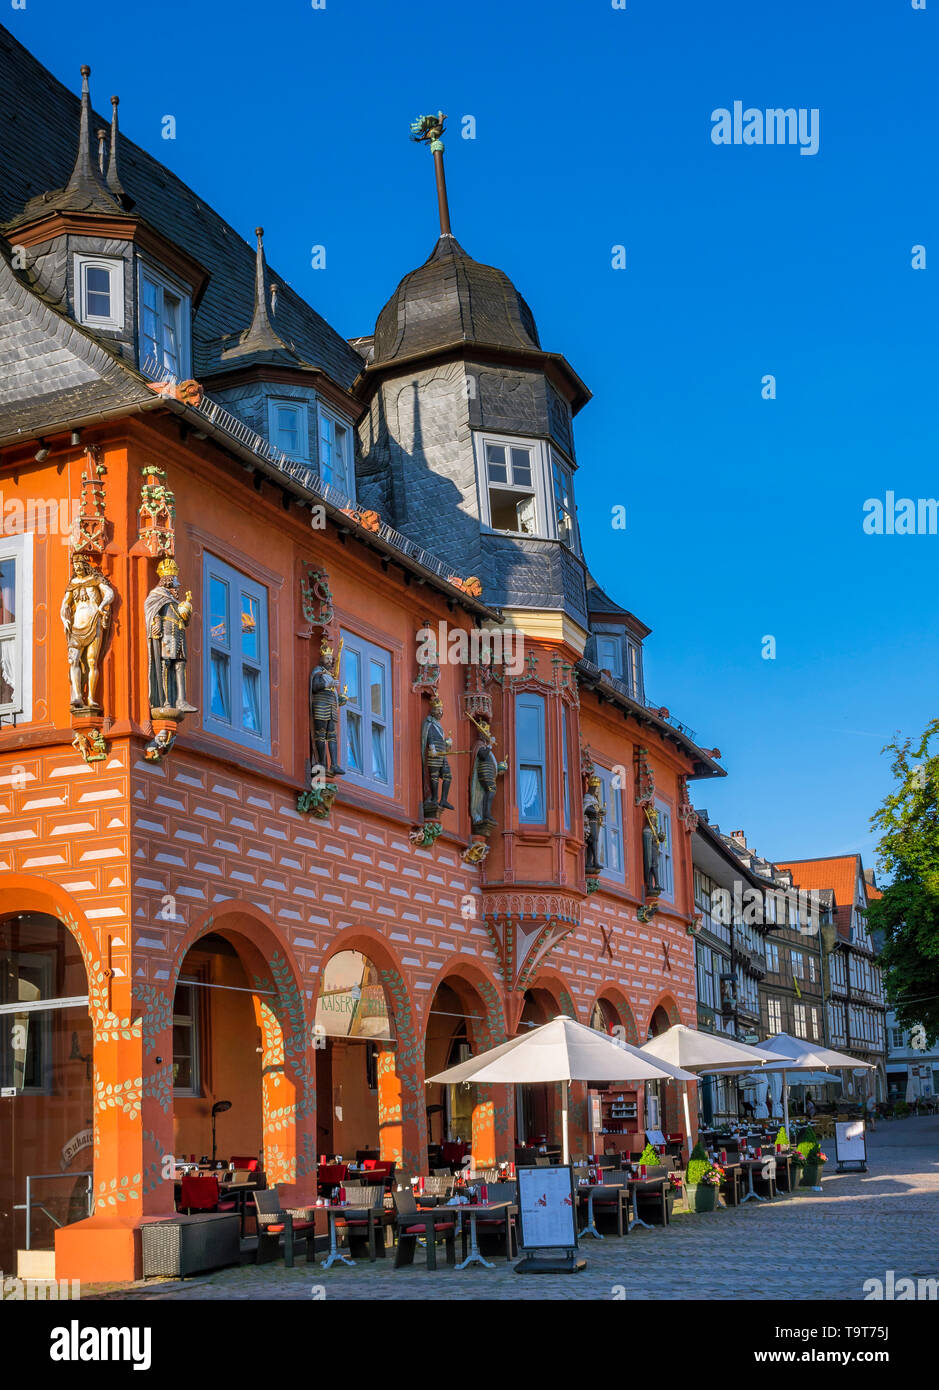 Site du patrimoine mondial de l'UNESCO-Hôtel Kaiserworth (maison de la guilde des tabliers) sur le marché en Goslar Basse-saxe Allemagne, Europe, UNESCO-Welterbestätte K Banque D'Images